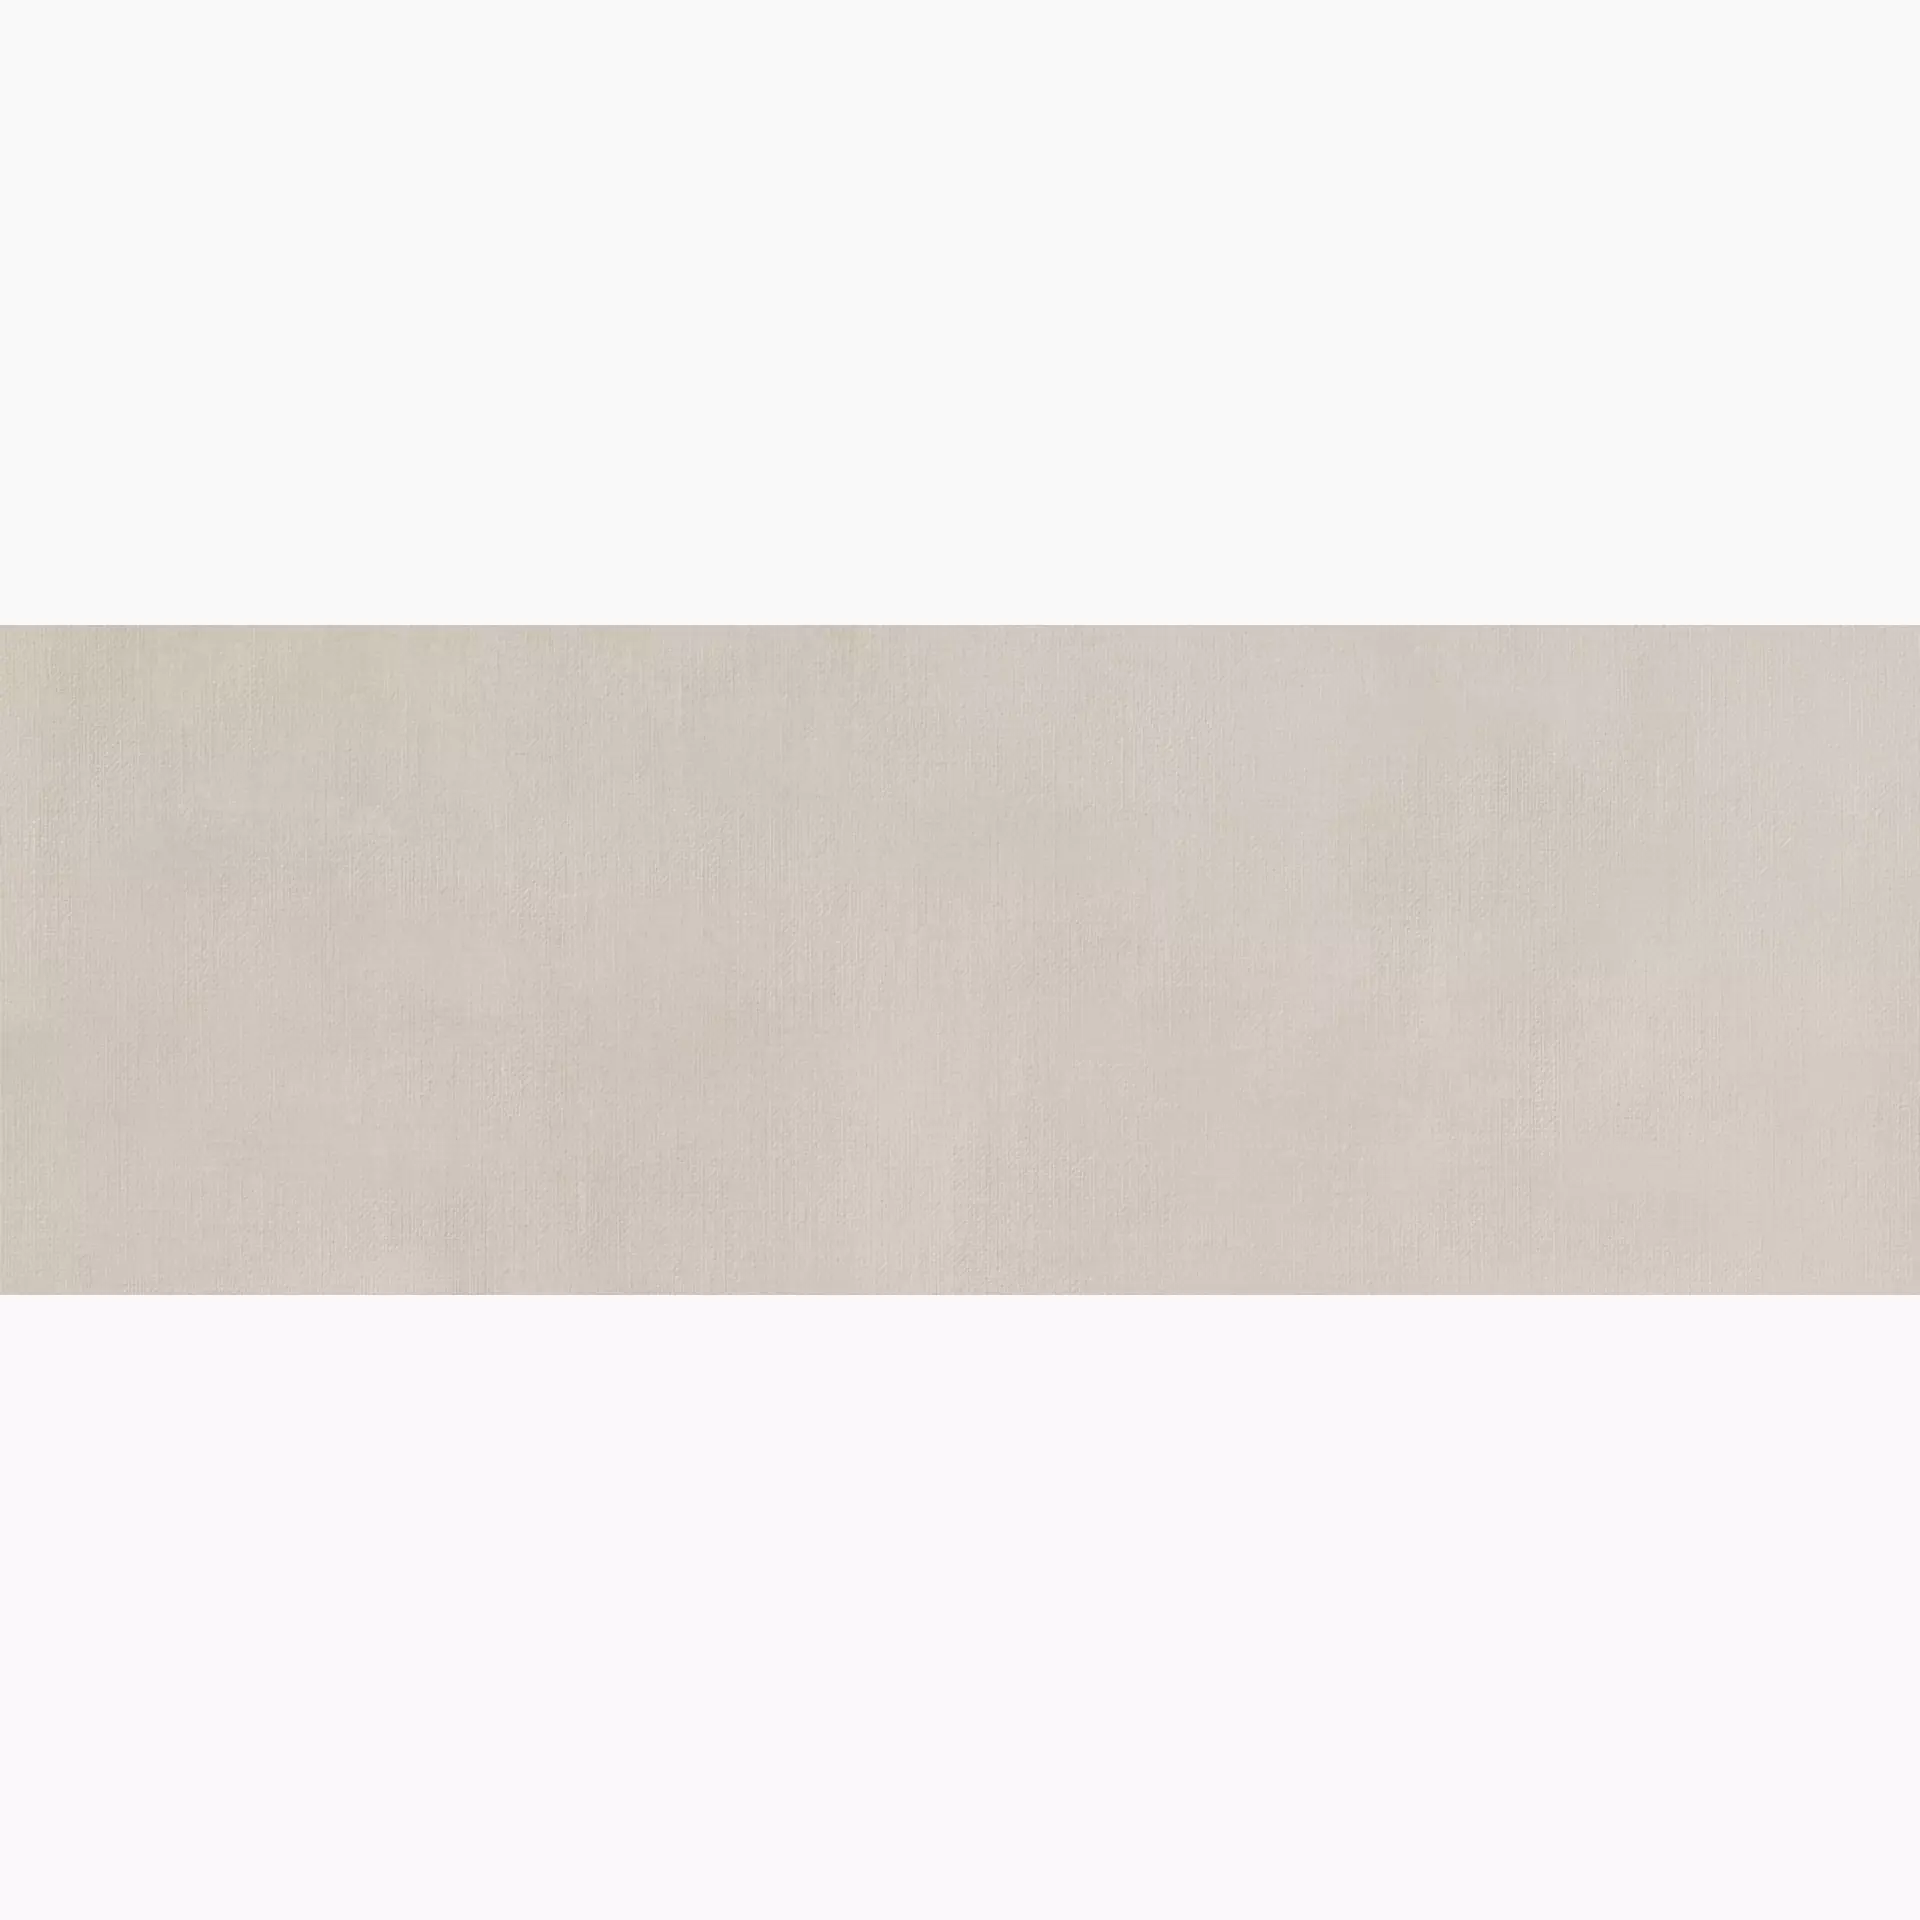 Wandfliese Marazzi Fabric Hemp Naturale – Matt Hemp MQUV matt natur 40x120cm rektifiziert 6mm